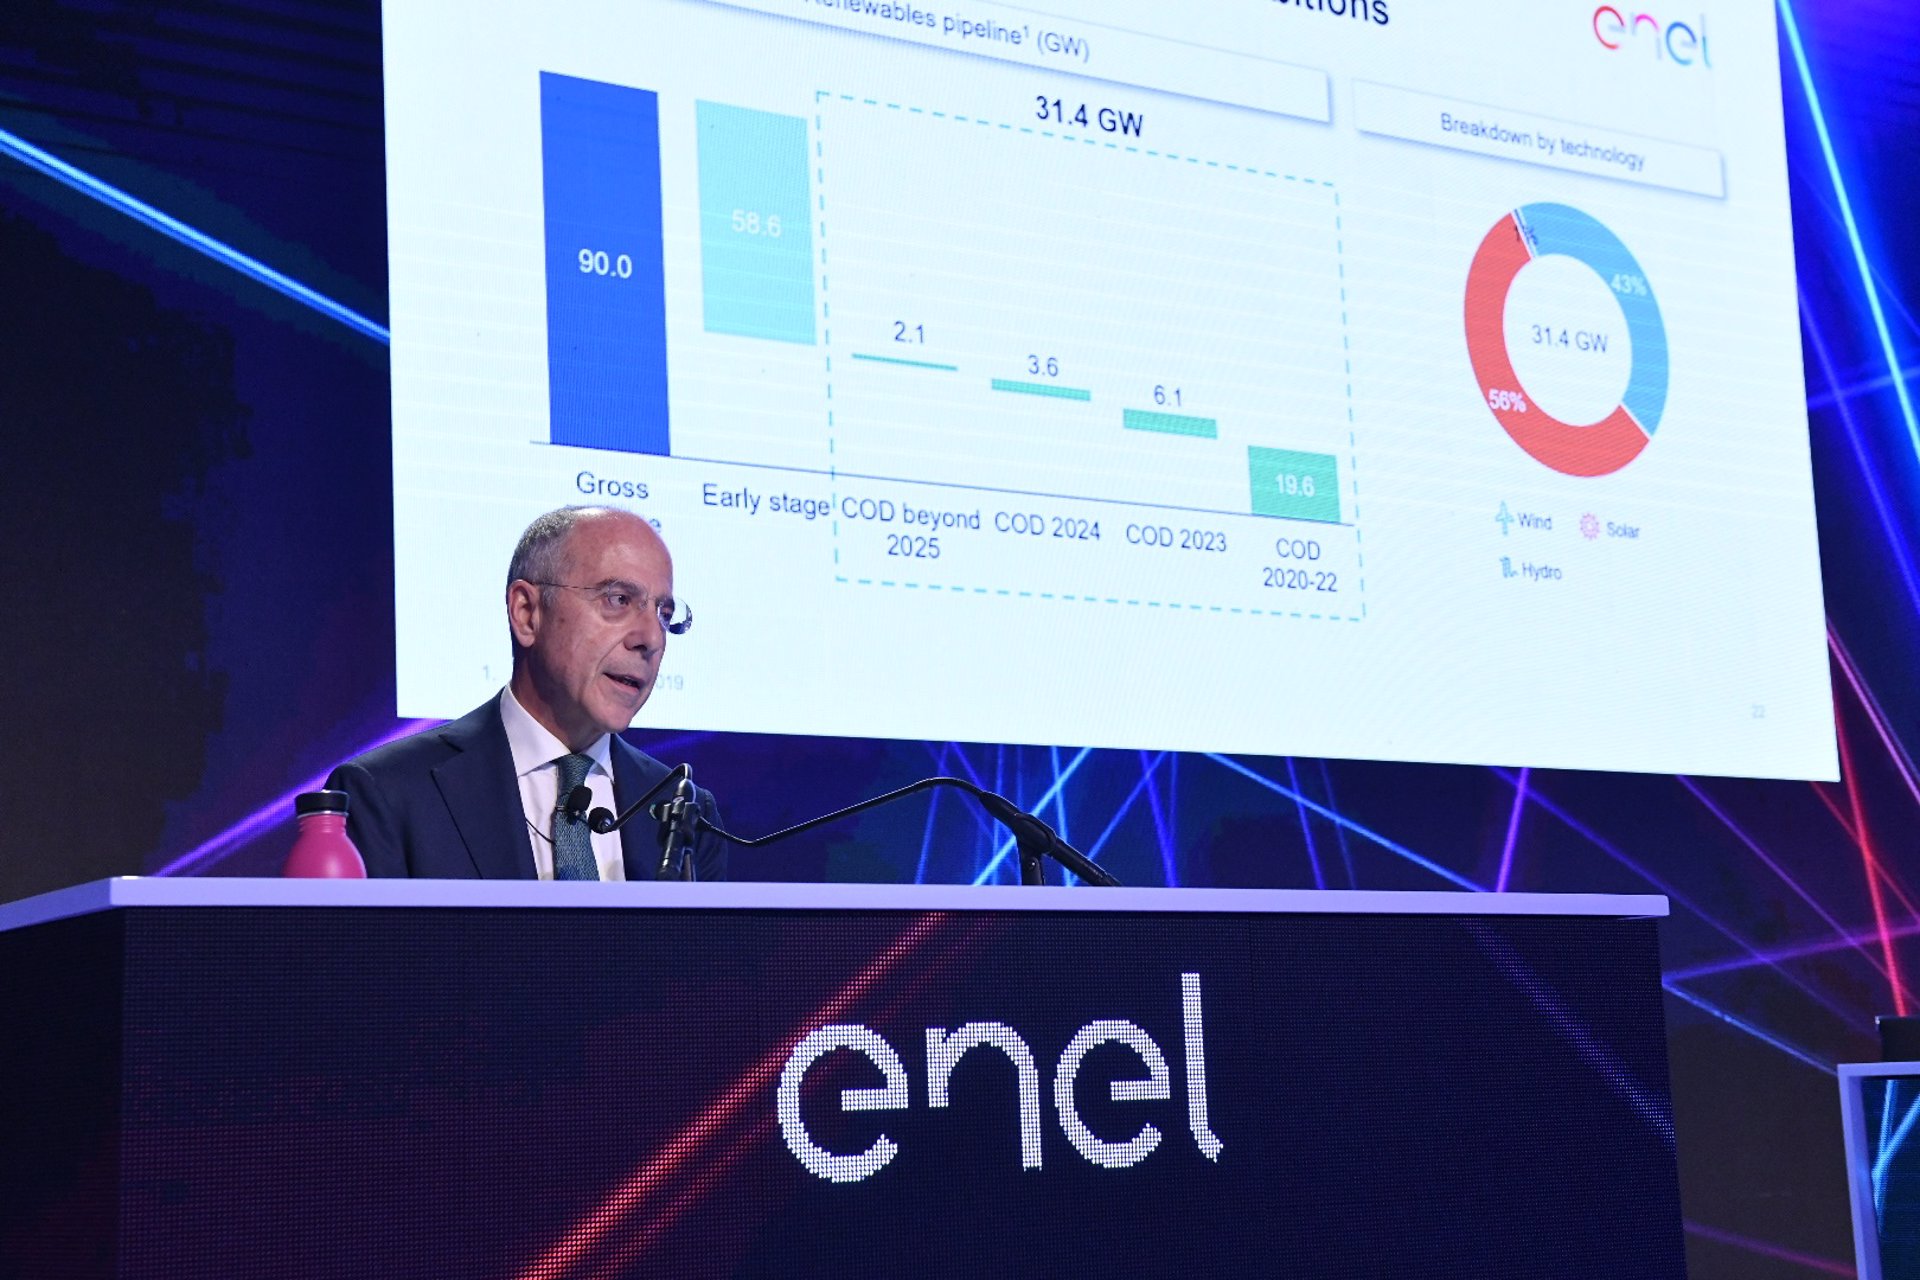 26/11/2019 Francesco Starace, CEO de Enel, en la presentación del plan estratégico 2019
ESPAÑA EUROPA MADRID ECONOMIA
ENEL